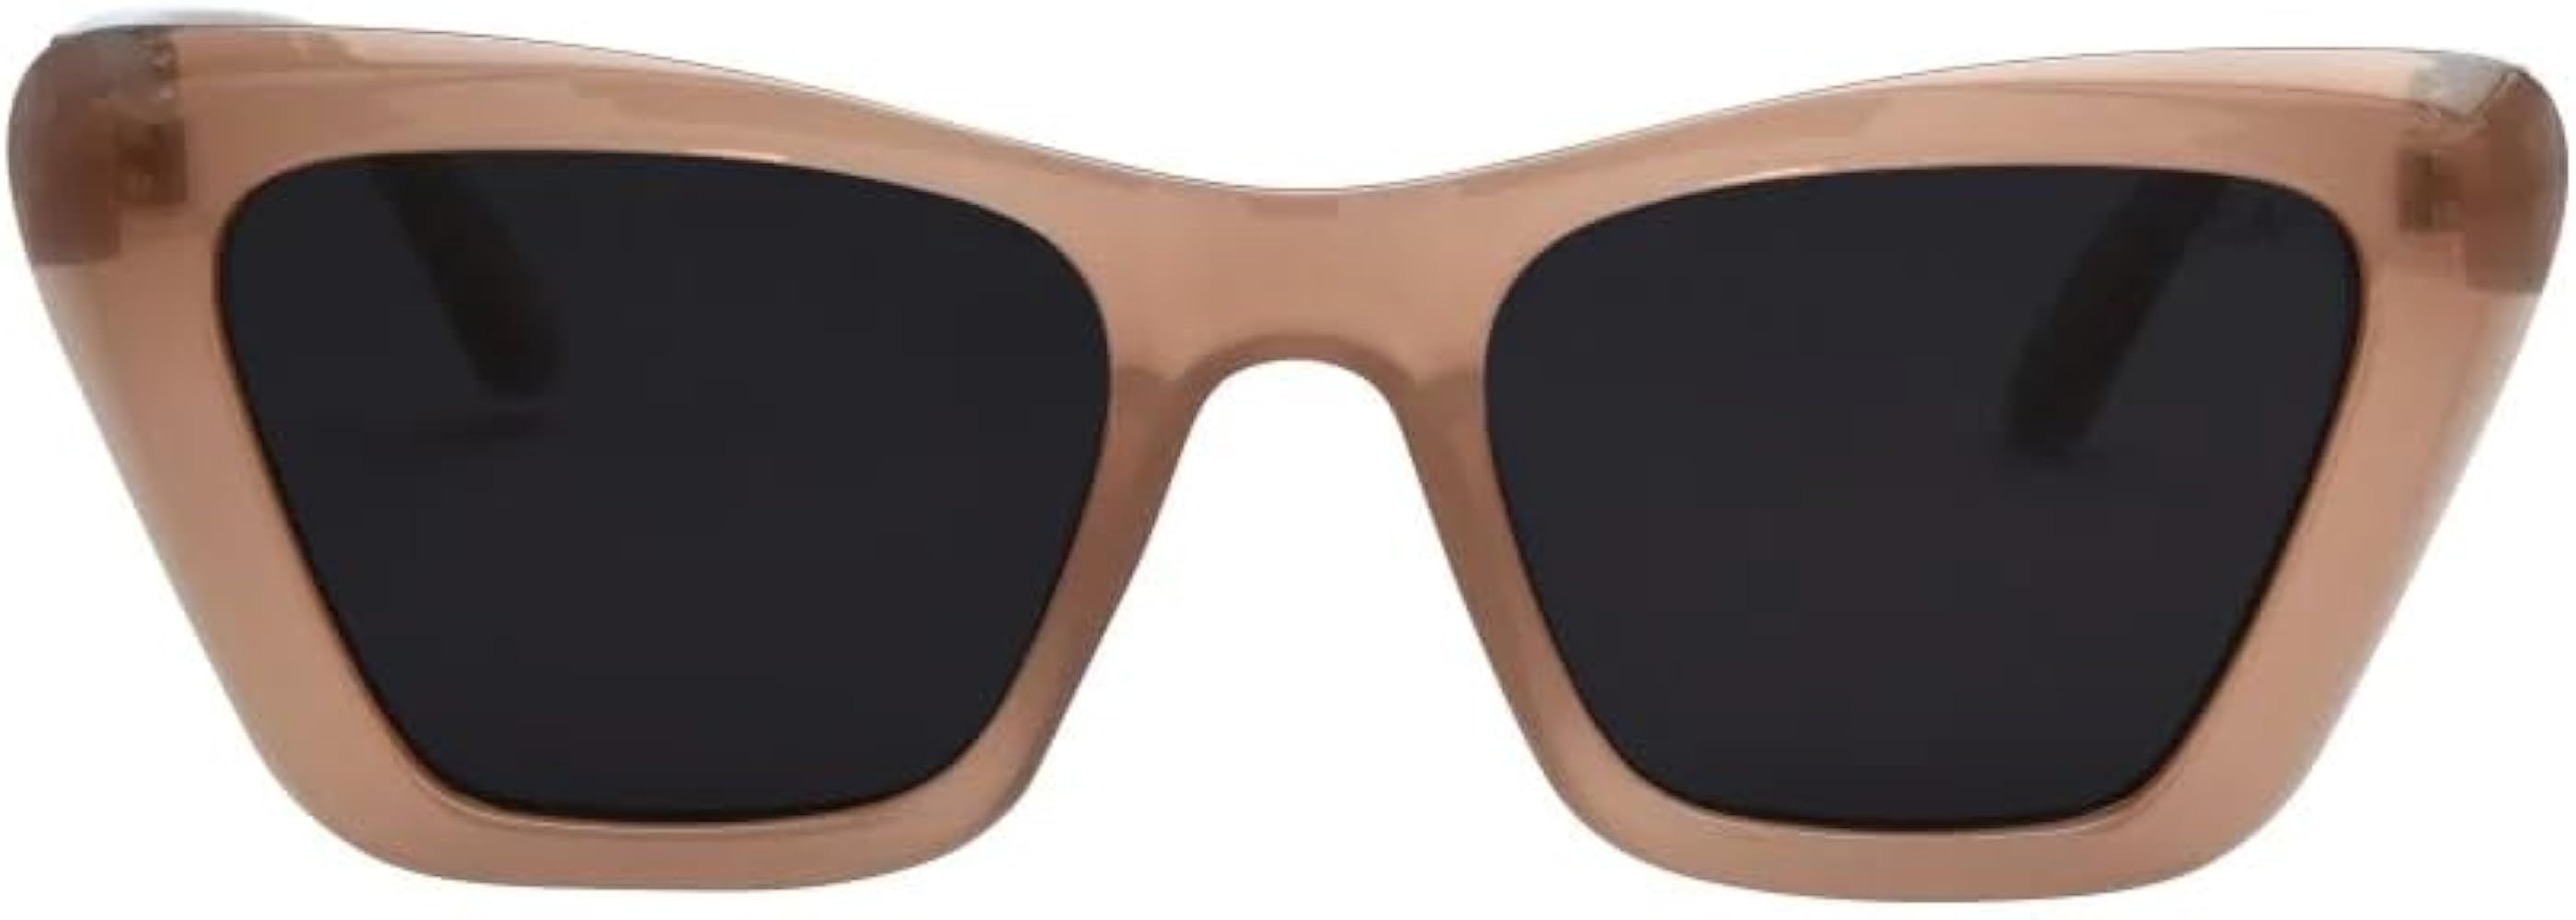 I-SEA Women's Sunglasses - Daisy | Amazon (US)